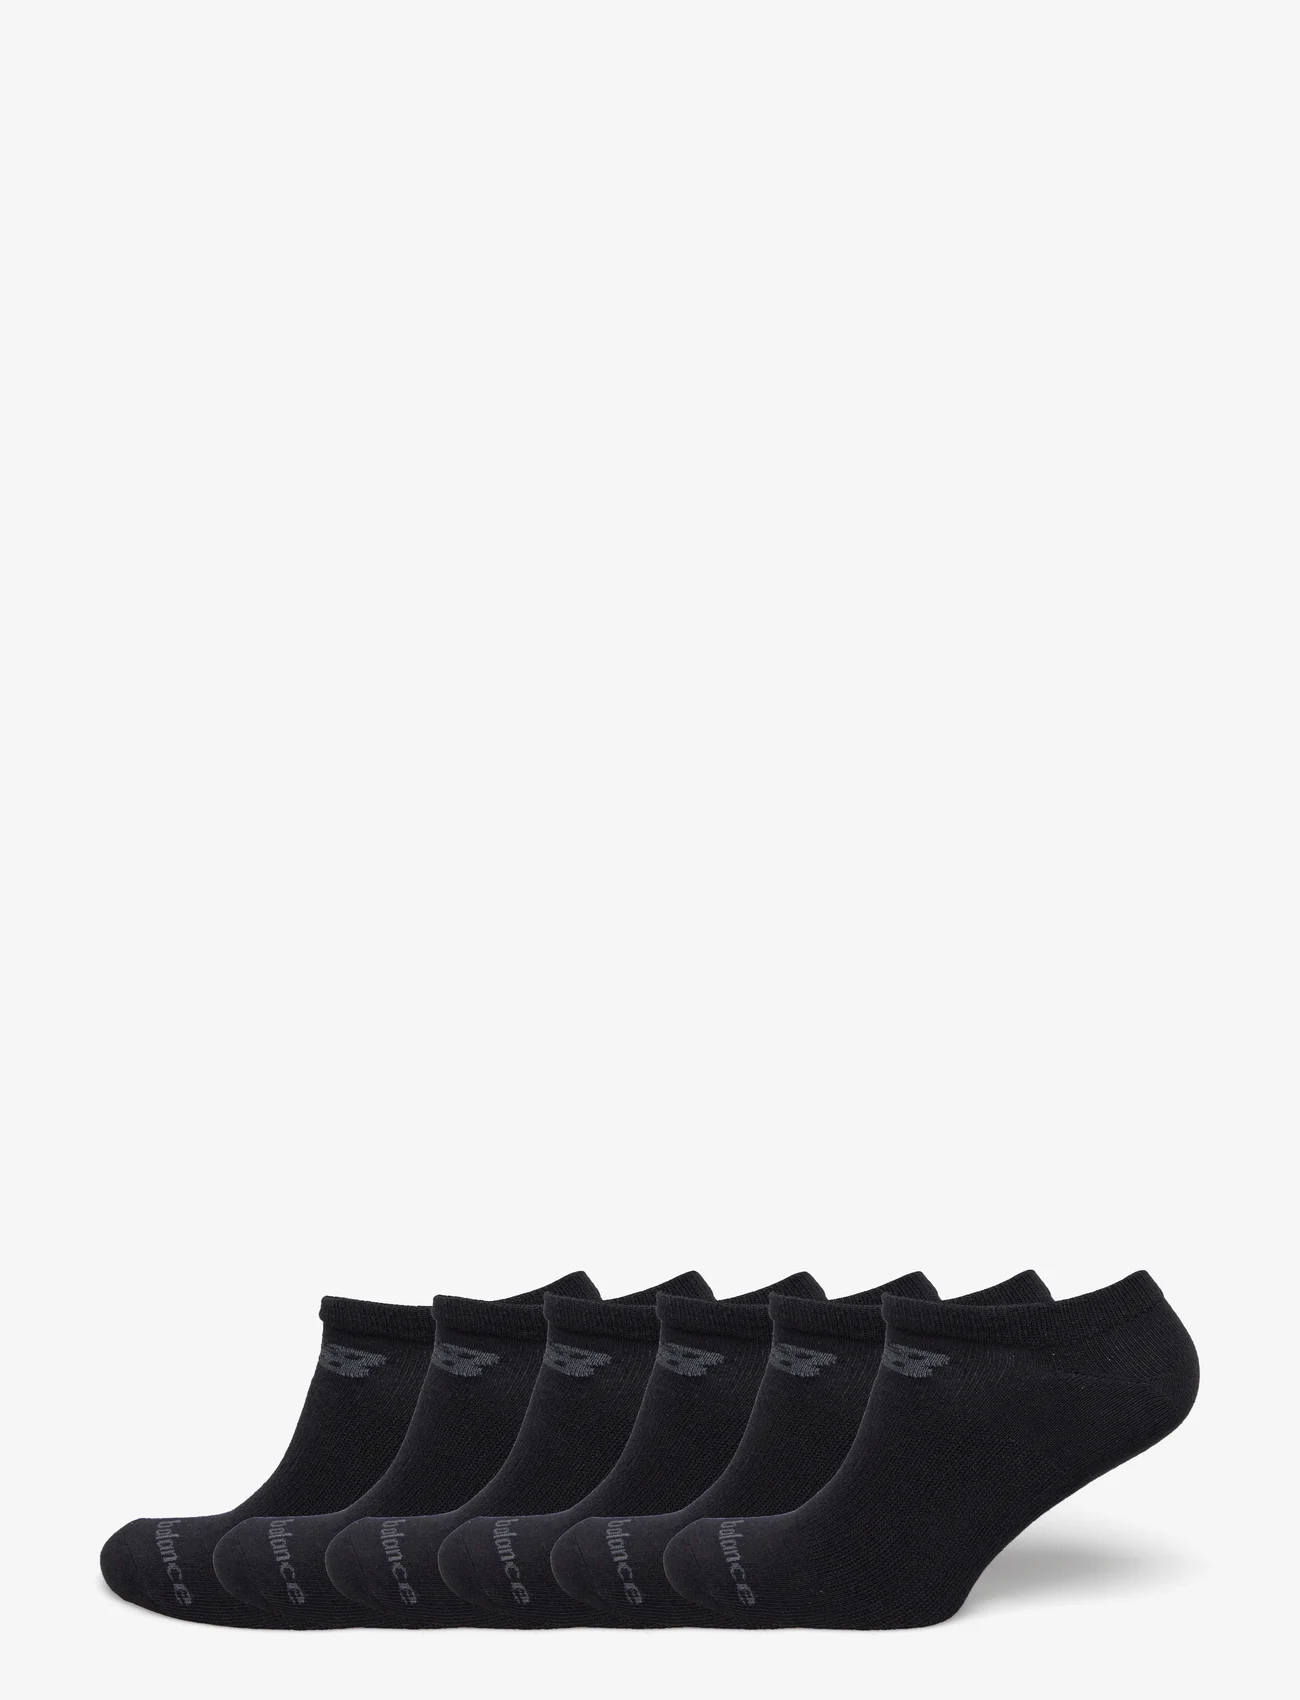 New Balance - Performance Cotton Flat Knit No Show Socks 6 Pack - sprzęt biegowy - black - 0